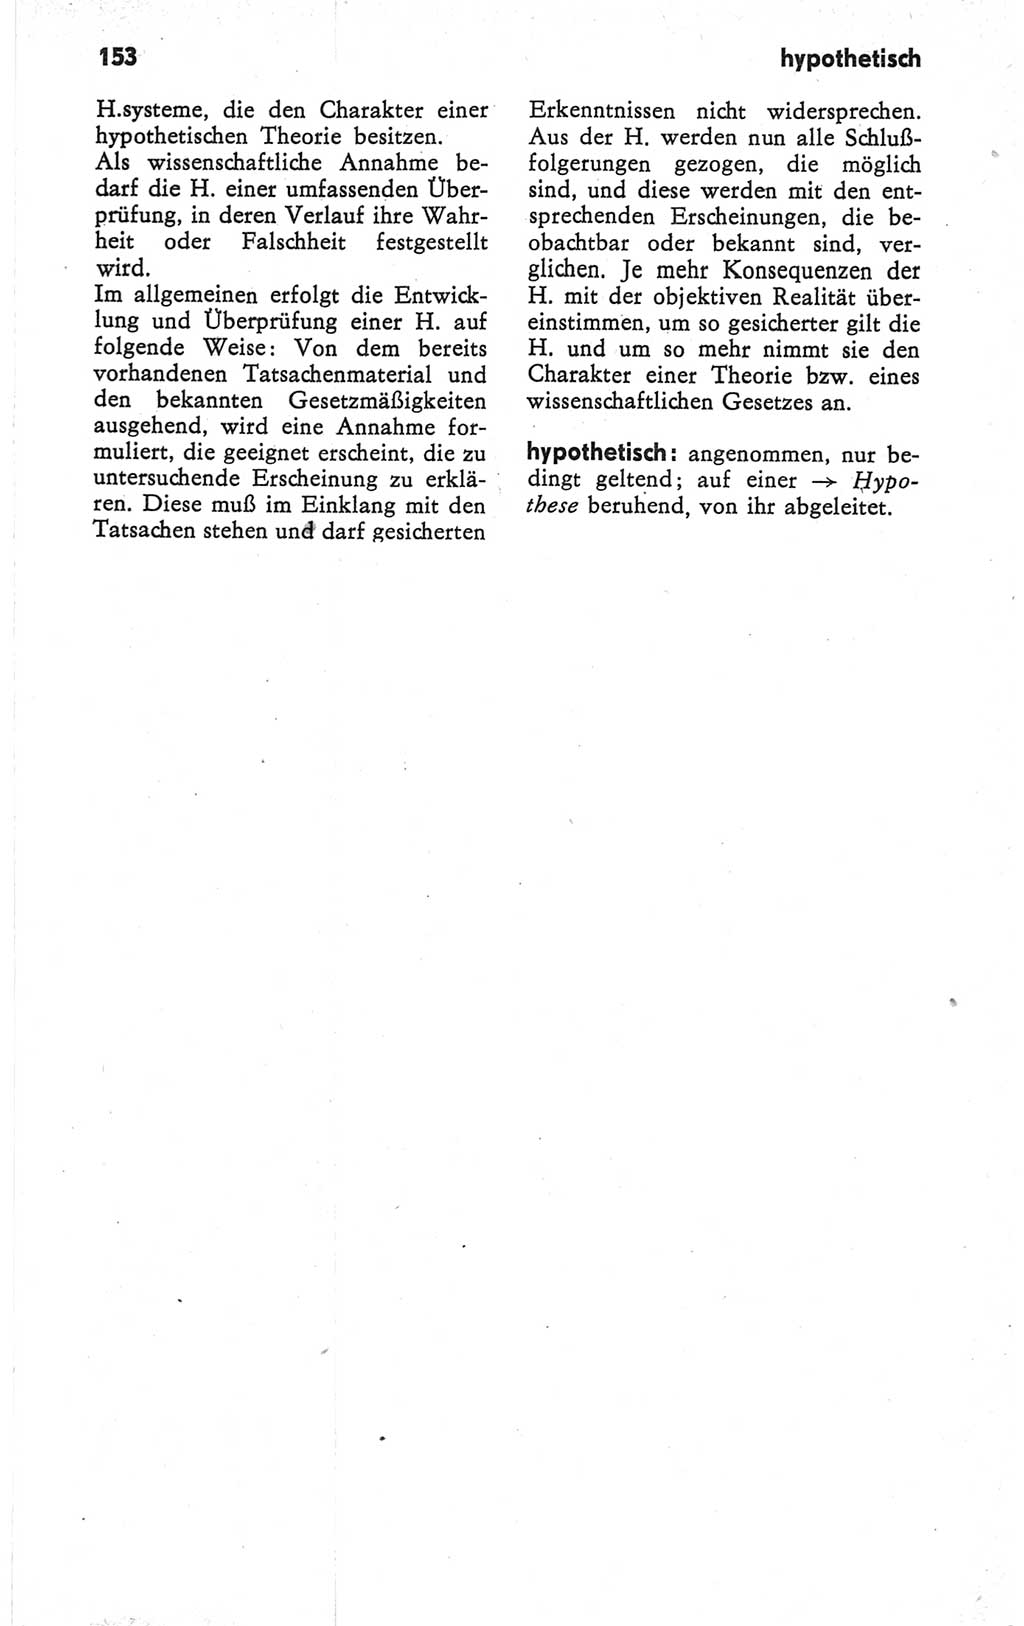 Kleines Wörterbuch der marxistisch-leninistischen Philosophie [Deutsche Demokratische Republik (DDR)] 1979, Seite 153 (Kl. Wb. ML Phil. DDR 1979, S. 153)